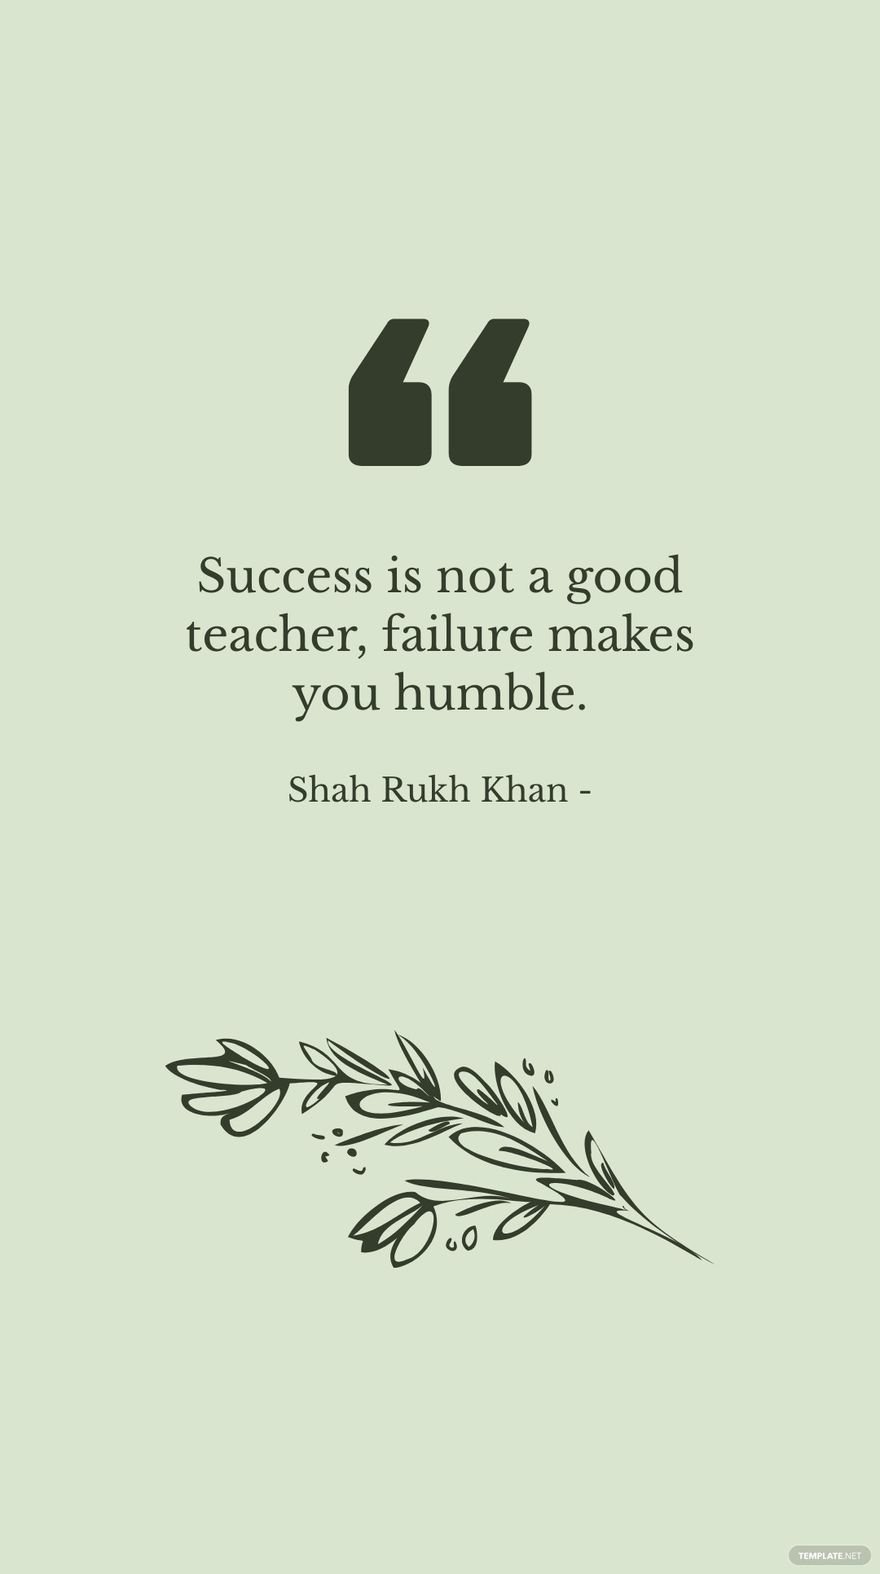 Shah Rukh Khan - Success is not a good teacher, failure makes you humble. in JPG